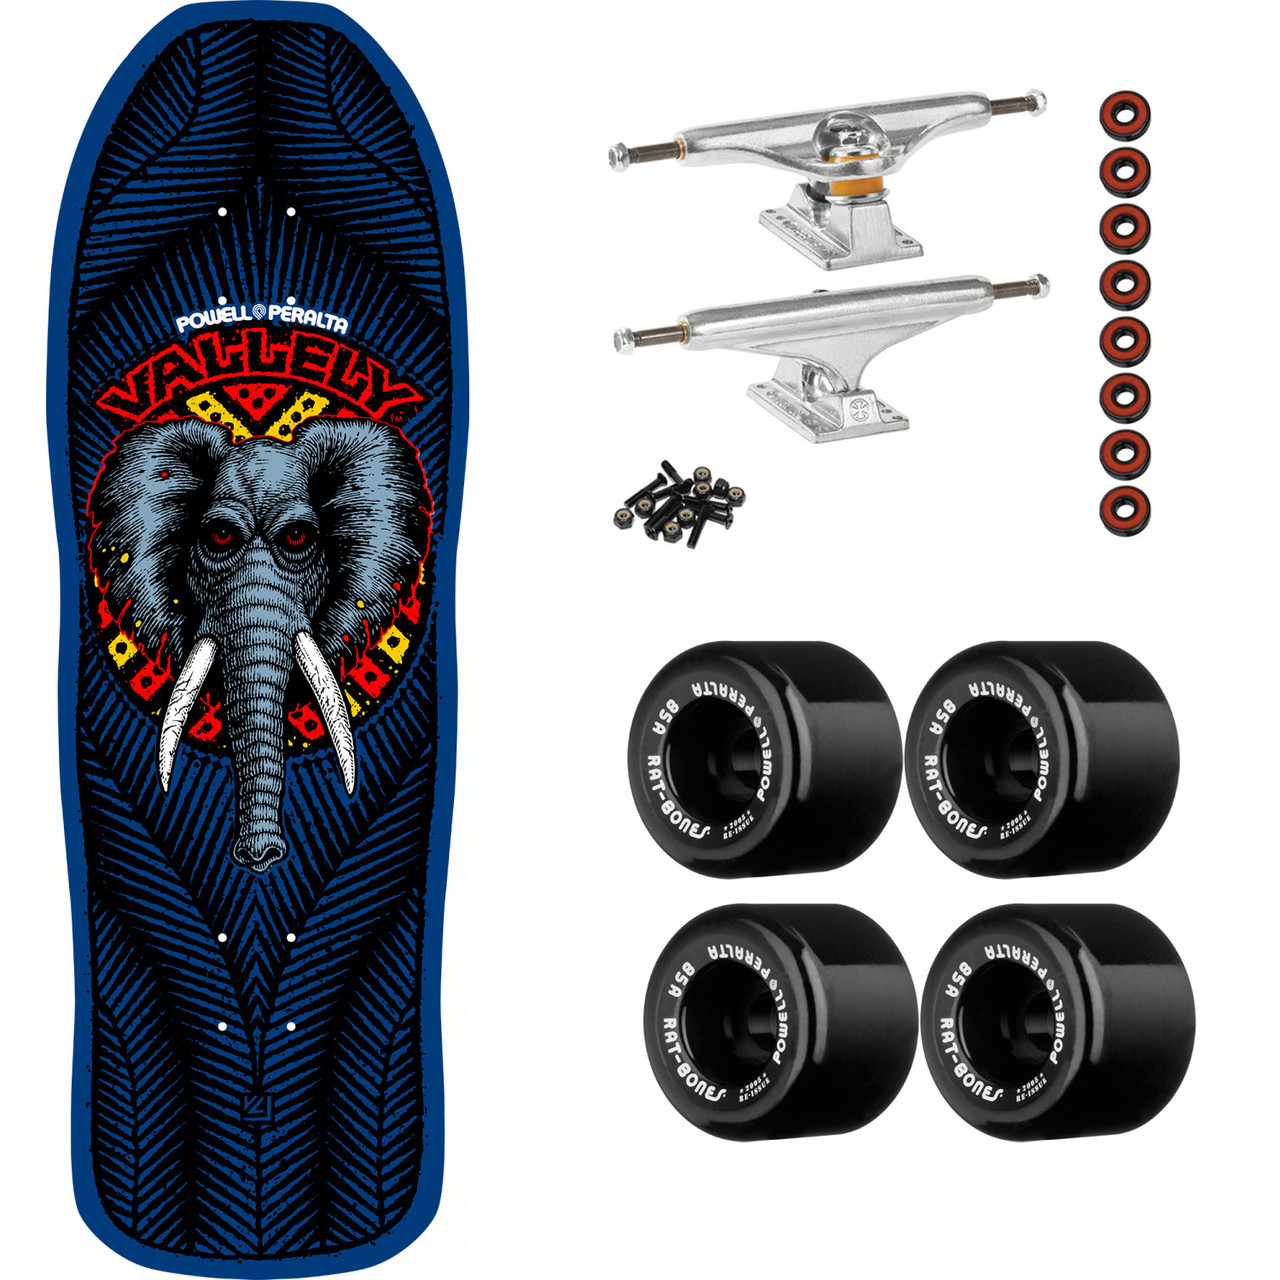 Powell Peralta Vallely Elephant Skateboard Deck Navy - 9.85 x 30